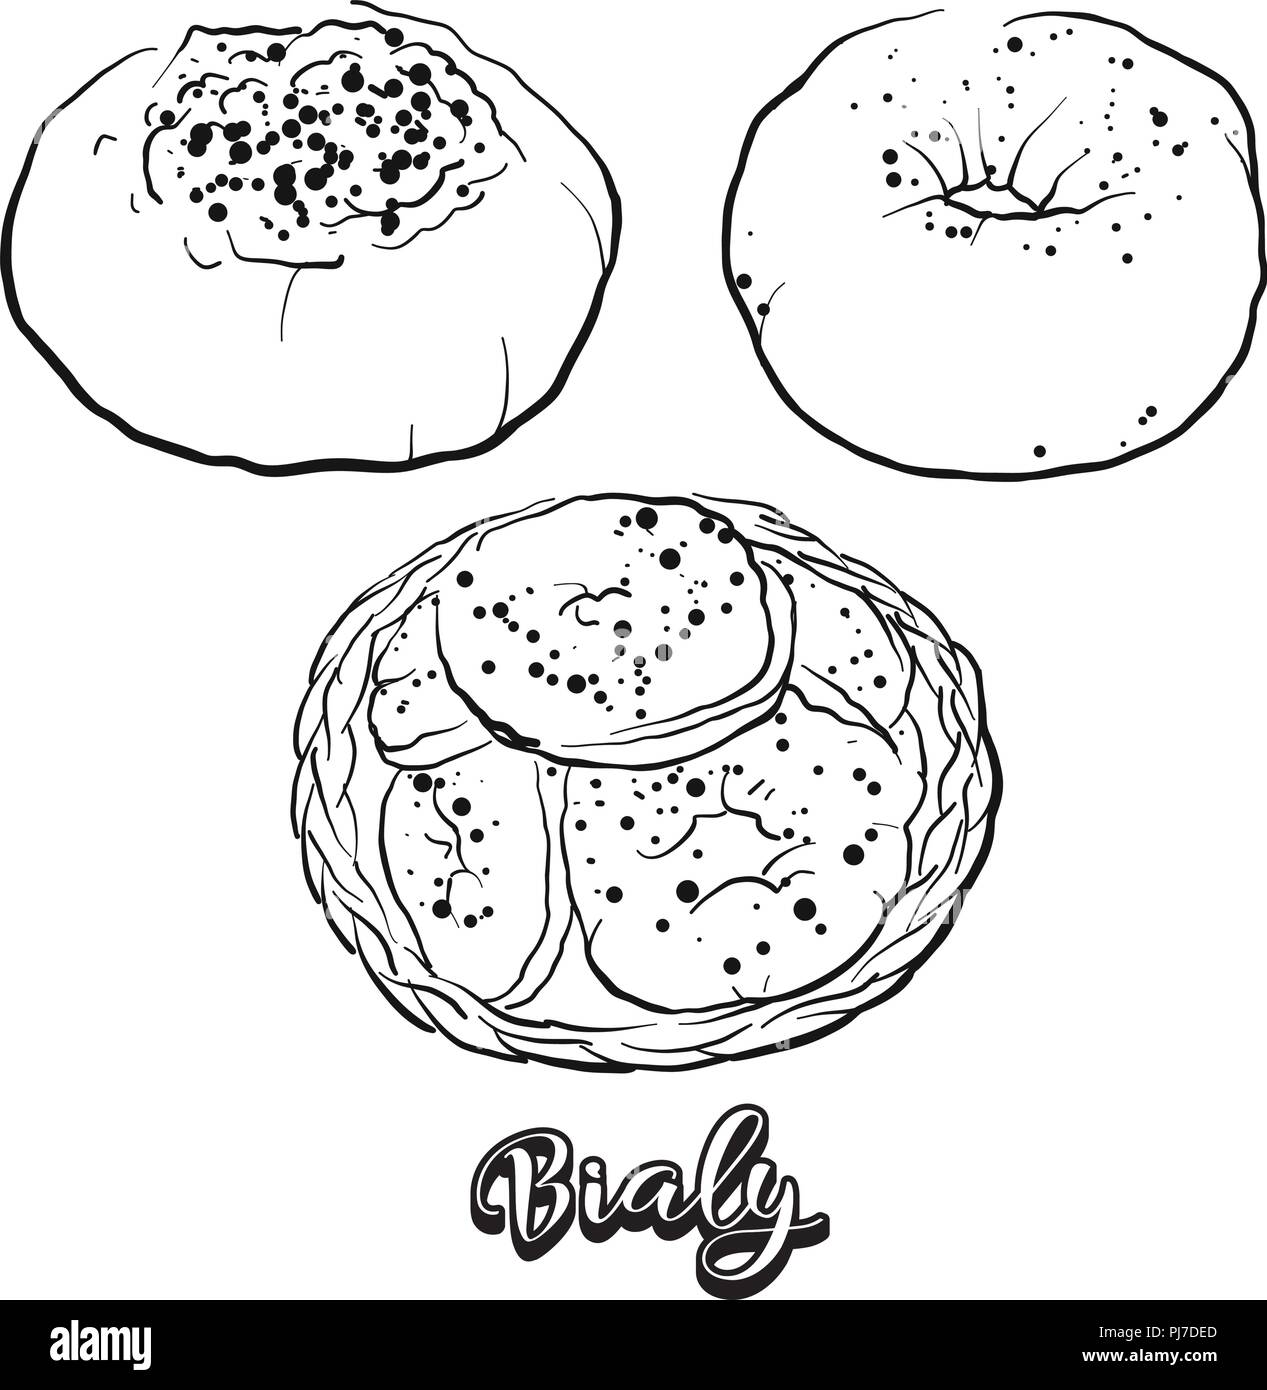 Croquis dessinés à la main de Bialy pain. Dessin vectoriel de la levure alimentaire pain, habituellement connu en Europe centrale. Illustration du pain series. Illustration de Vecteur